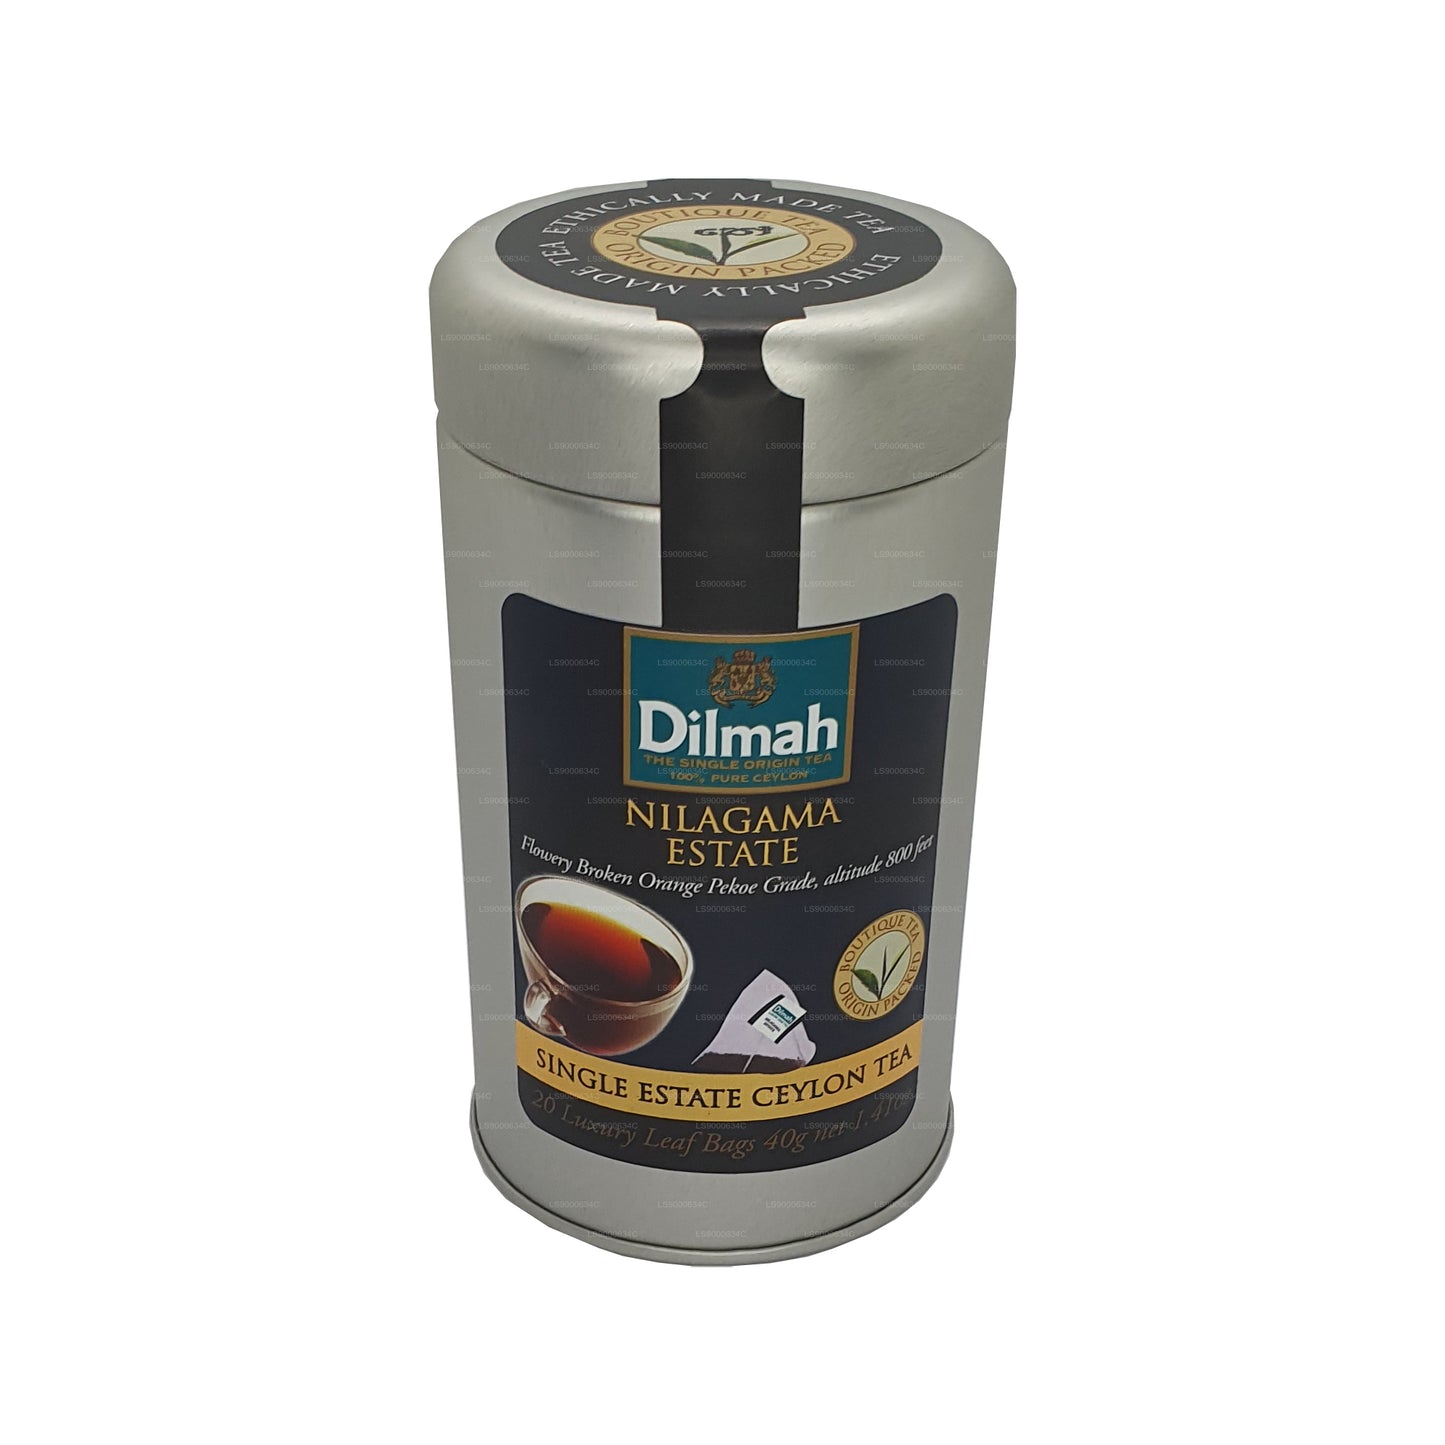 Dilmah Nilagama Single Estate Tea (40 g) 20 theezakjes